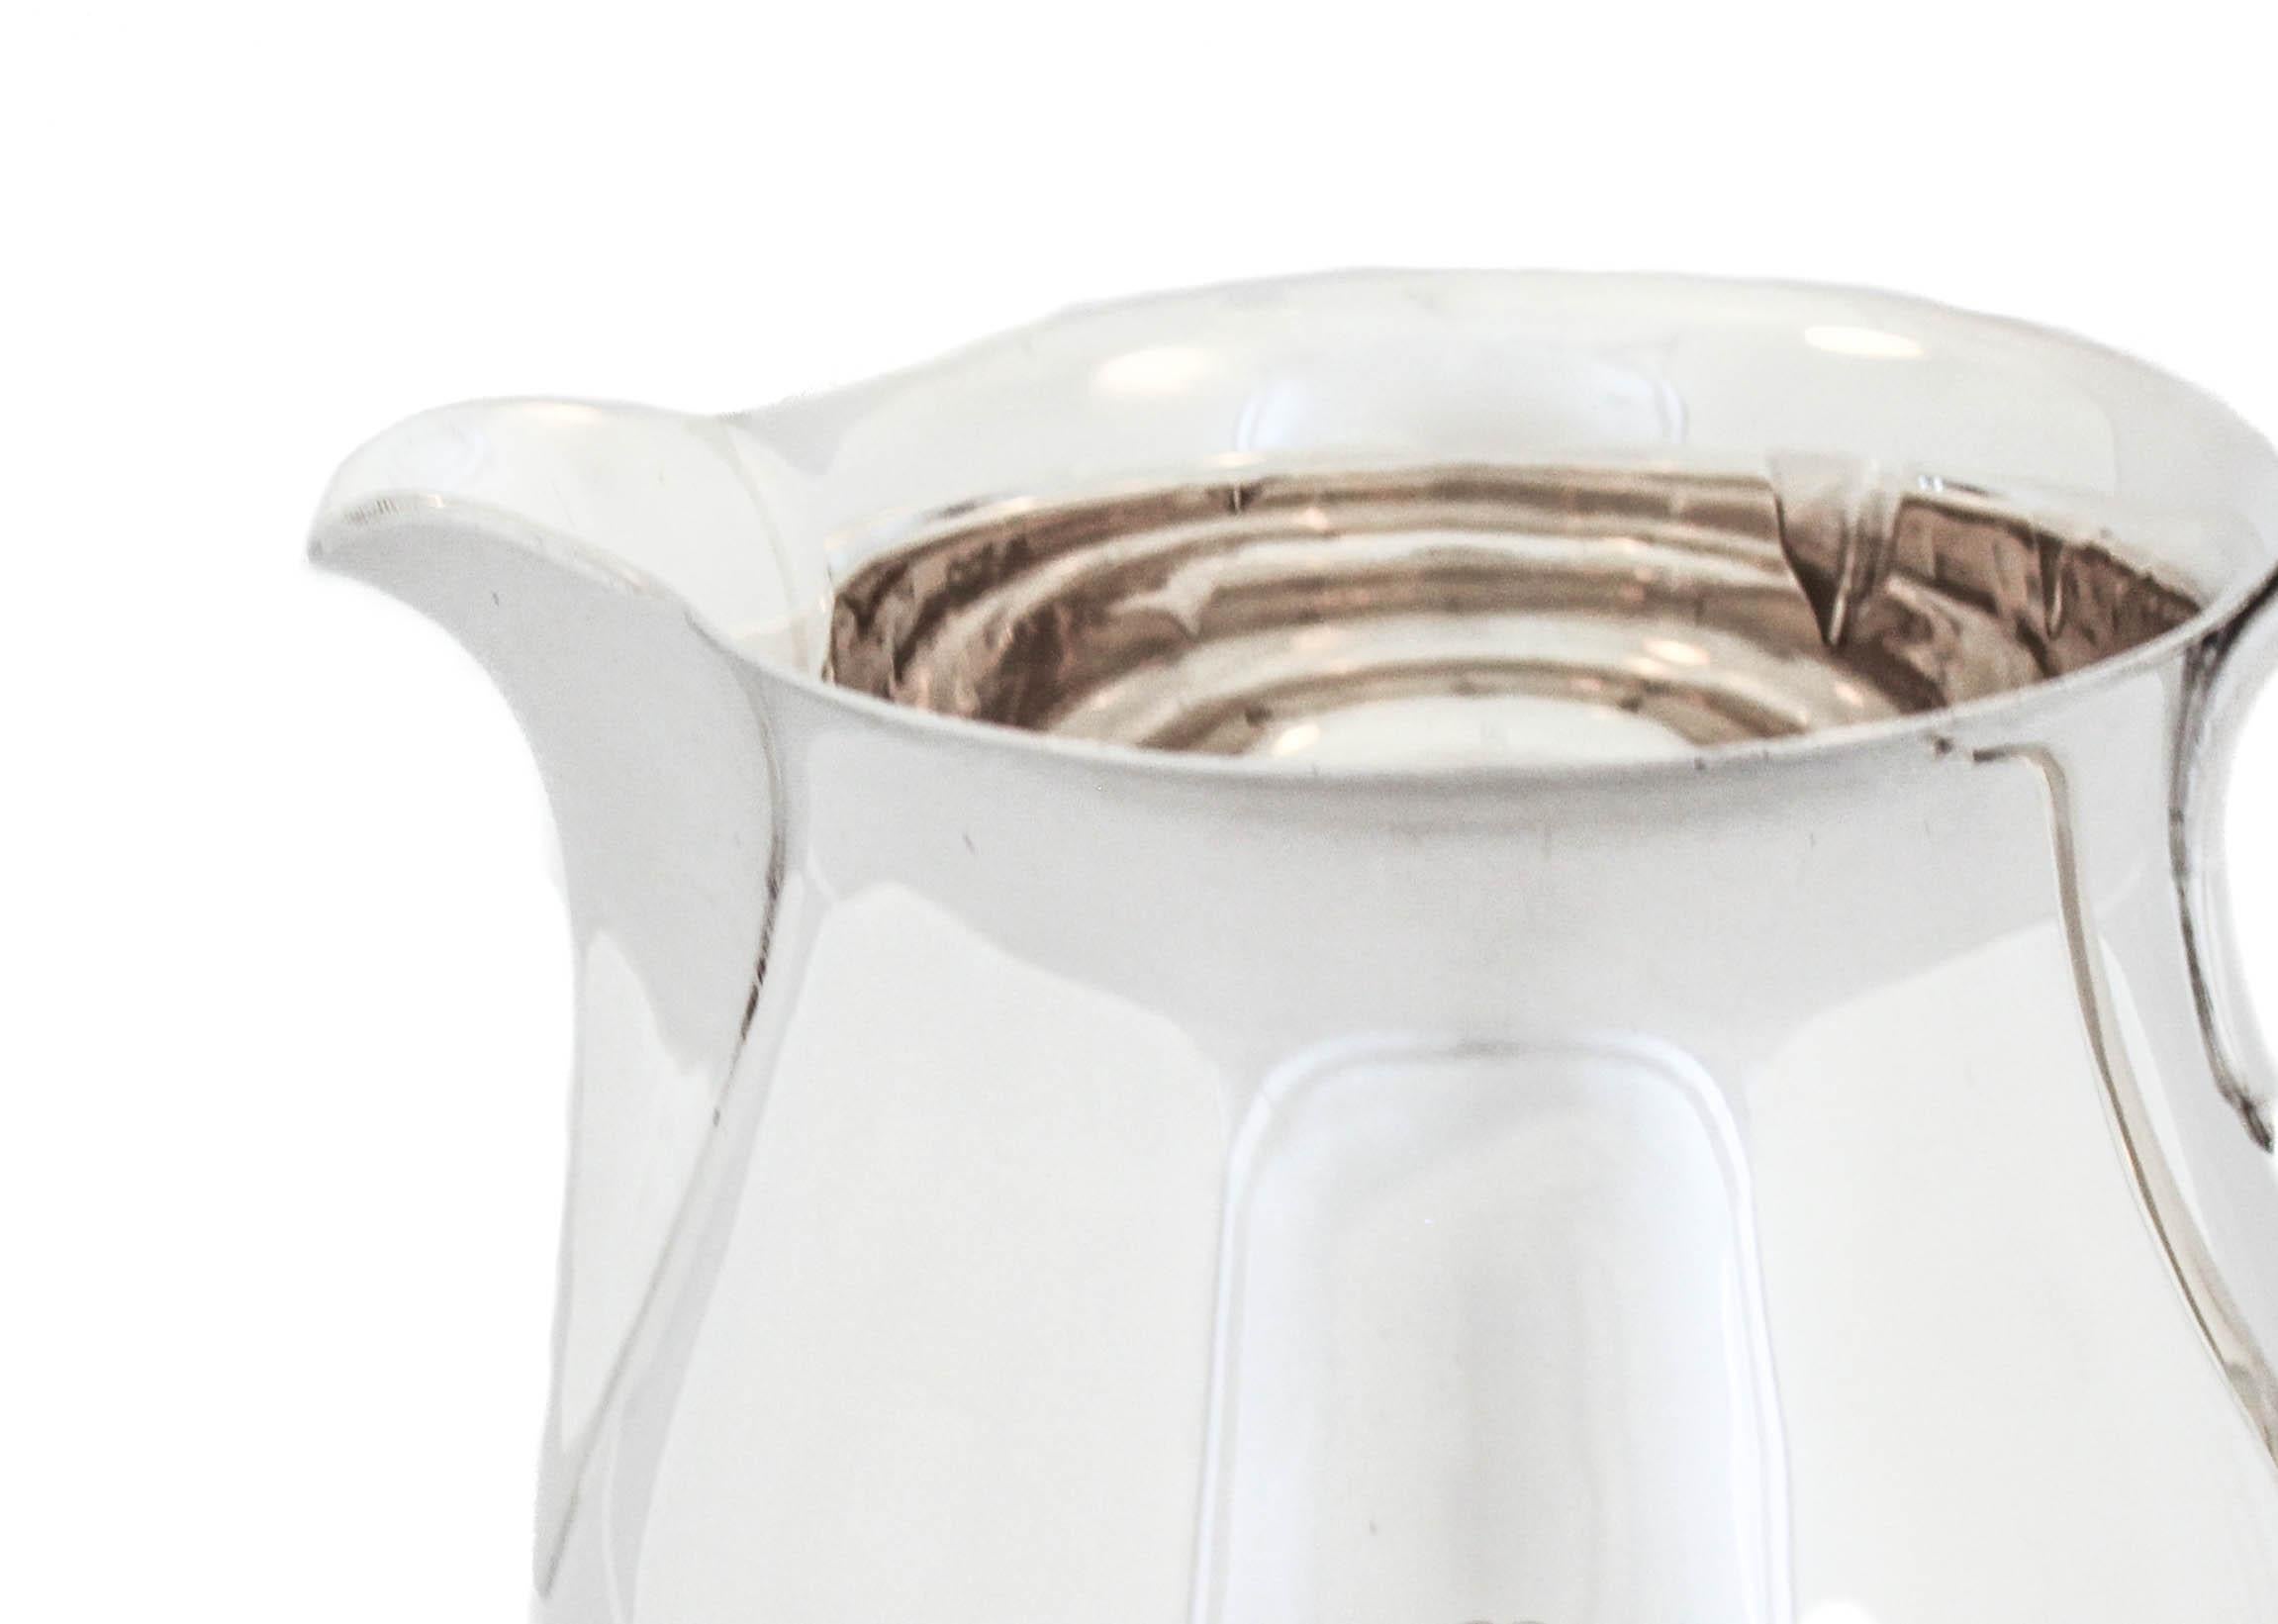 Nous vous proposons un pichet à eau en argent sterling de la célèbre société Tiffany and Company, poinçonné en 1921.  Il a une forme et un design fédéralistes et ne comporte aucun élément décoratif, conformément au style fédéraliste des débuts de